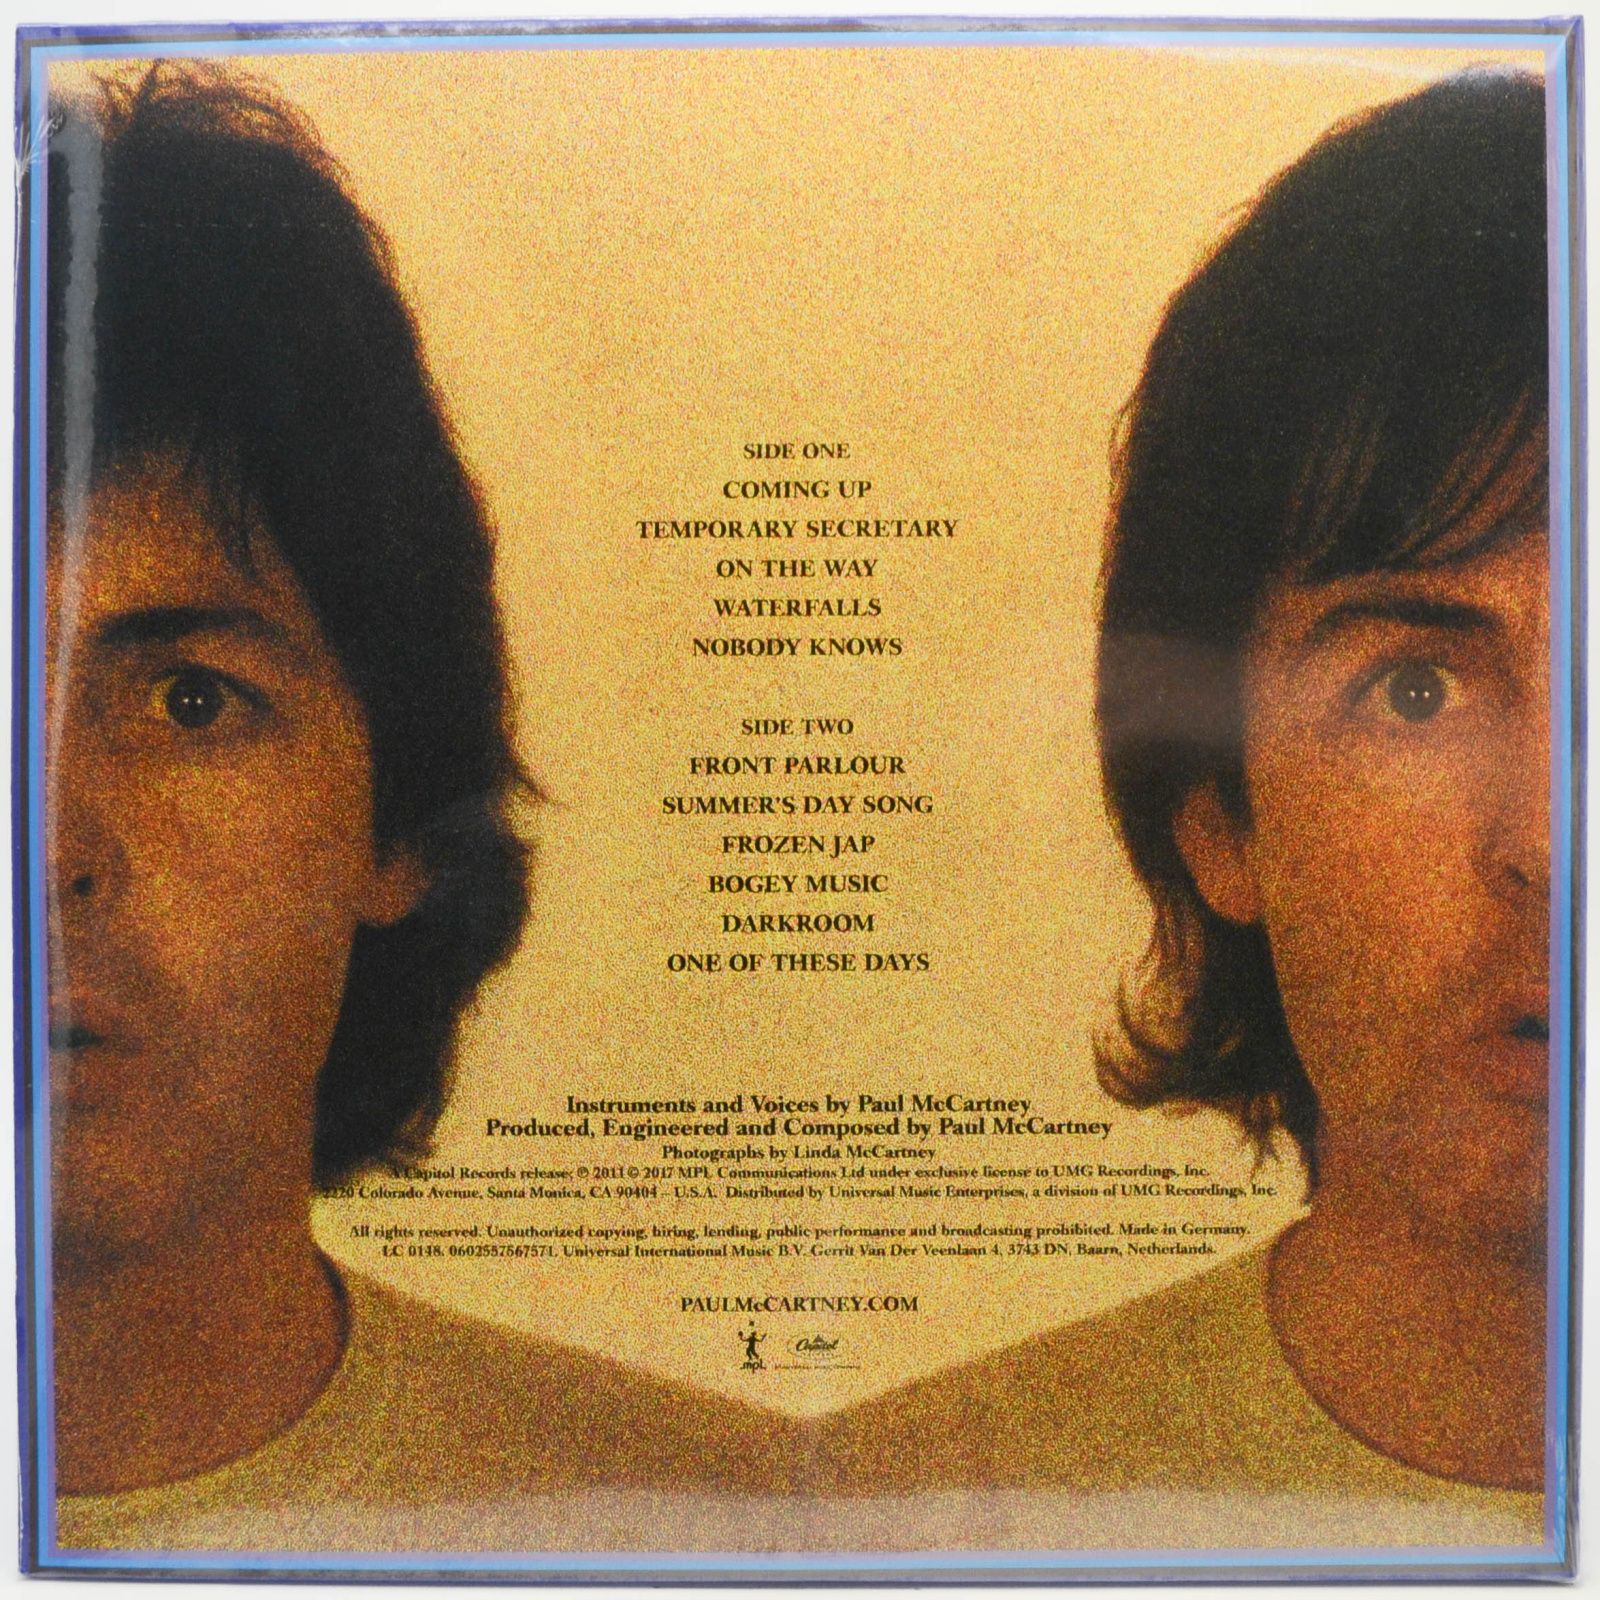 Paul McCartney — McCartney II, 1980